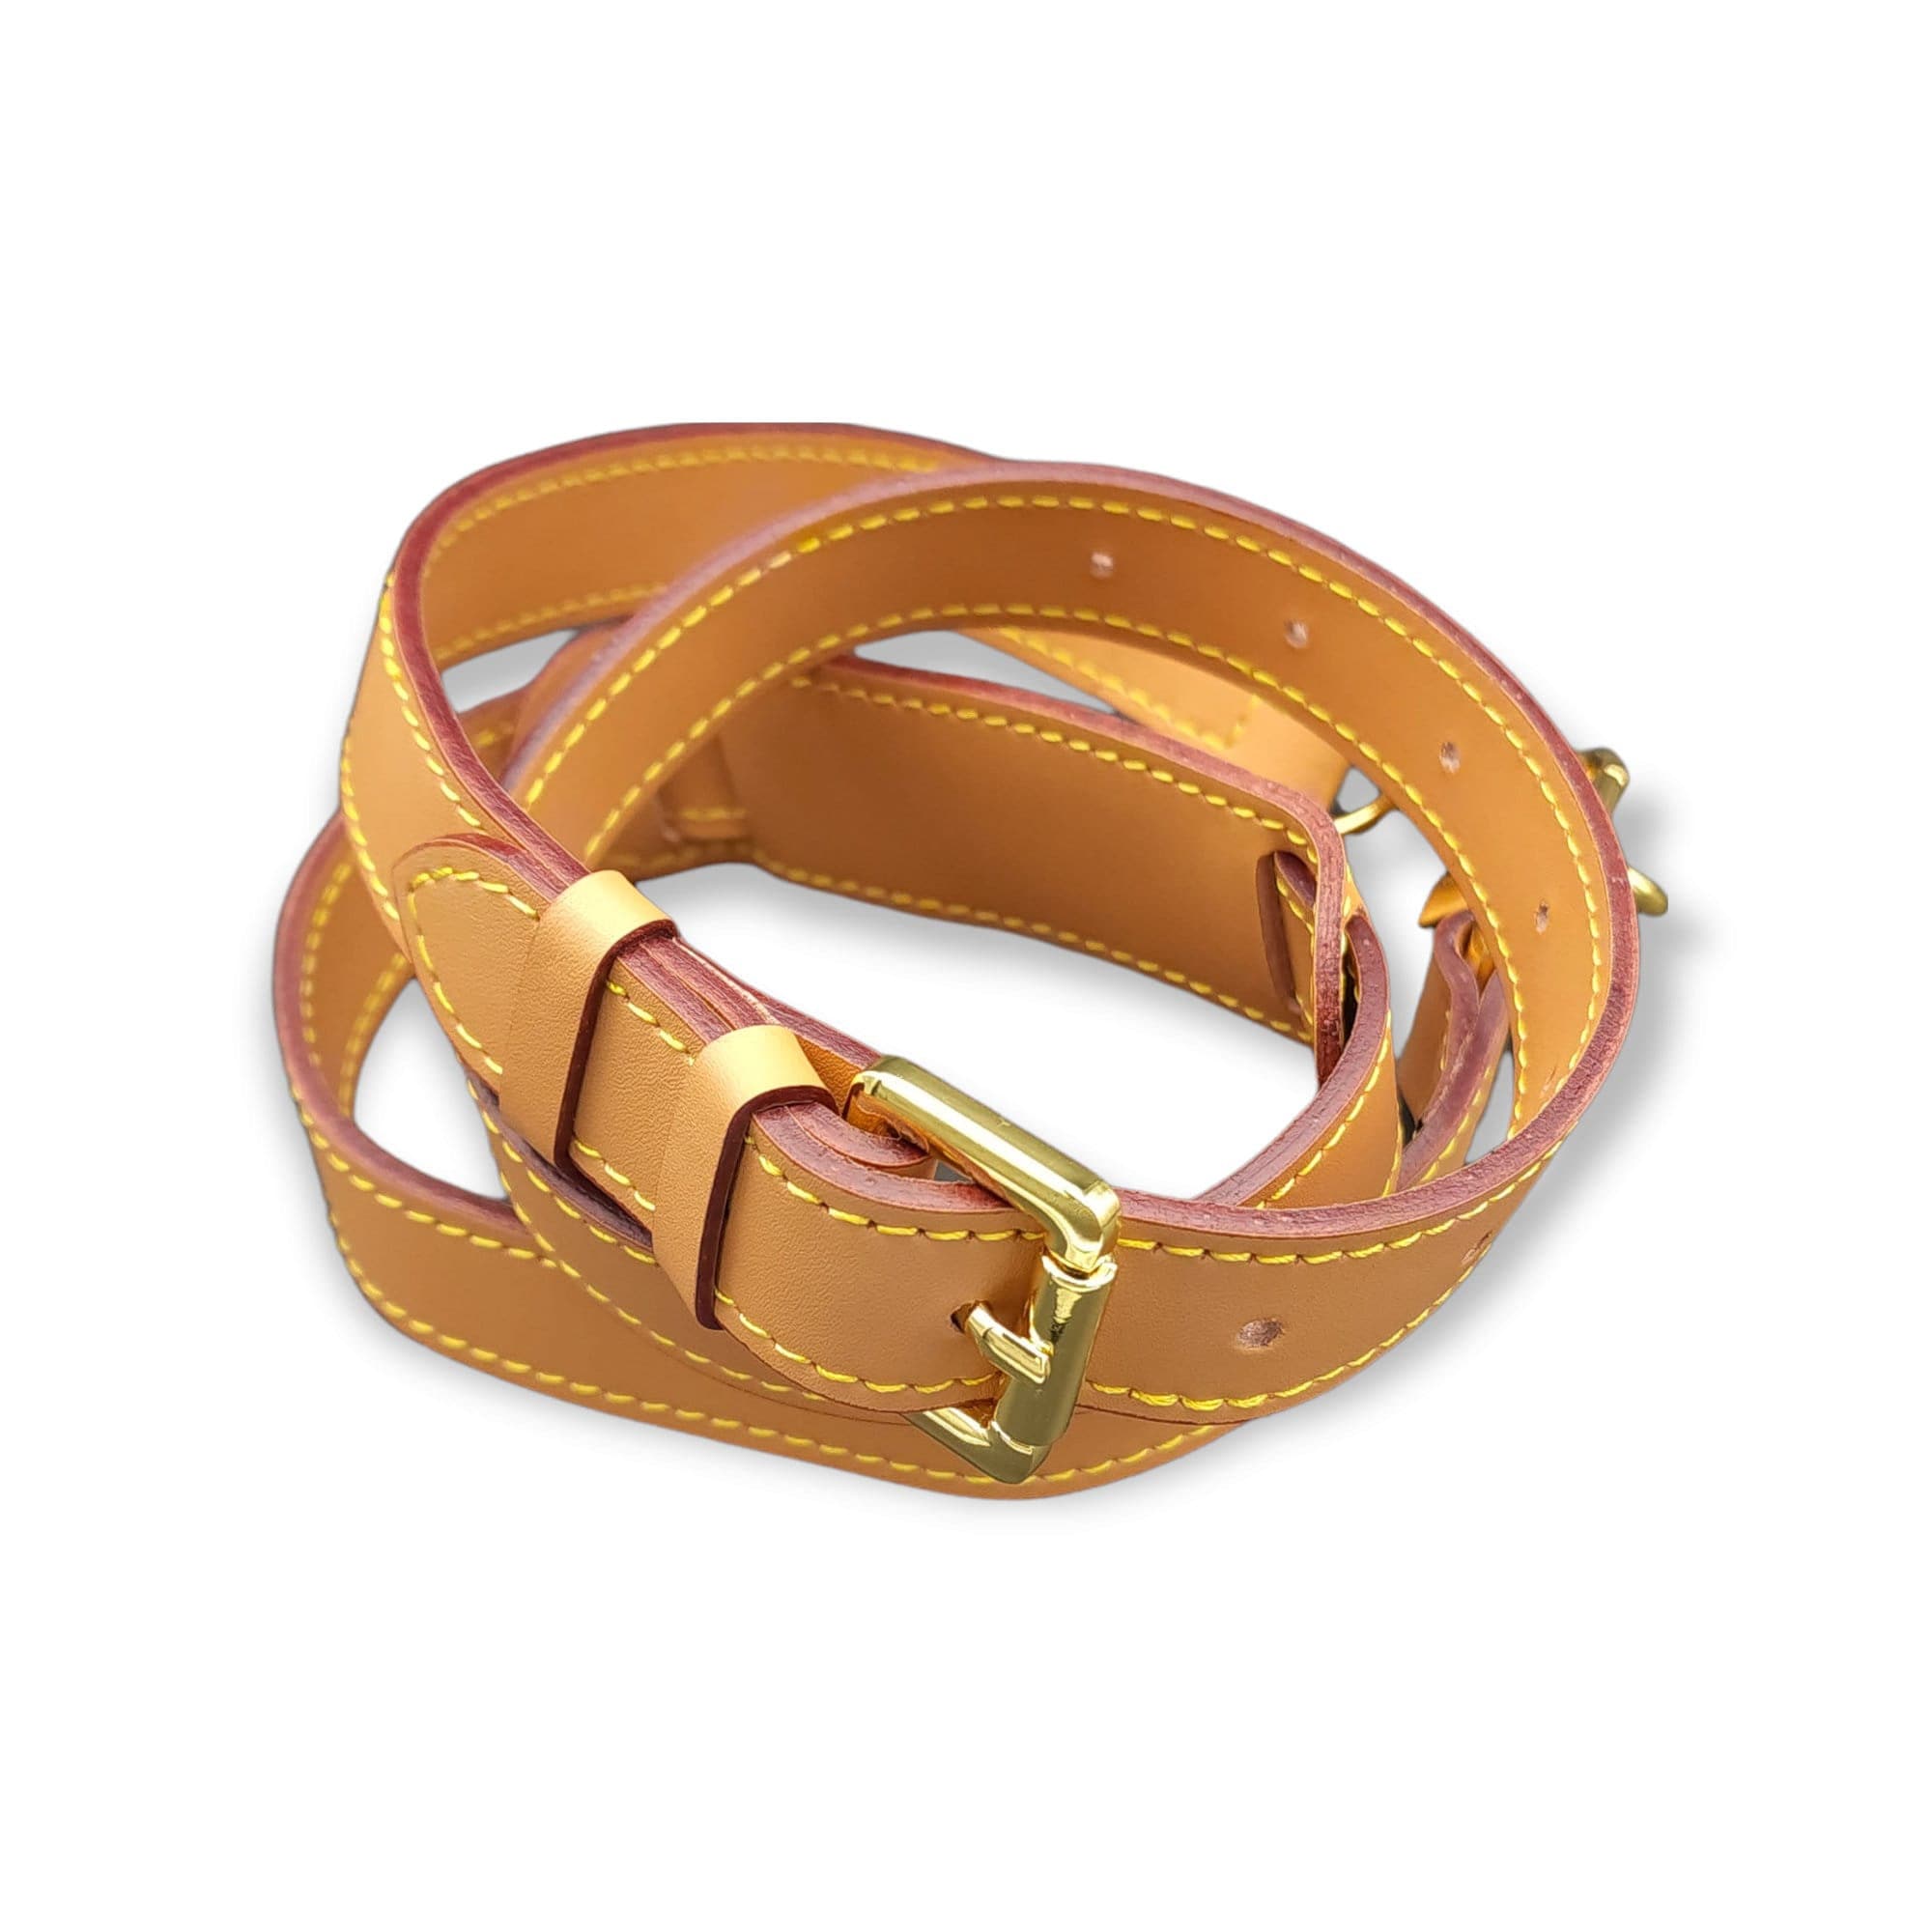 Shop Louis Vuitton Sporty strap (J02496, J02498) by CITYMONOSHOP